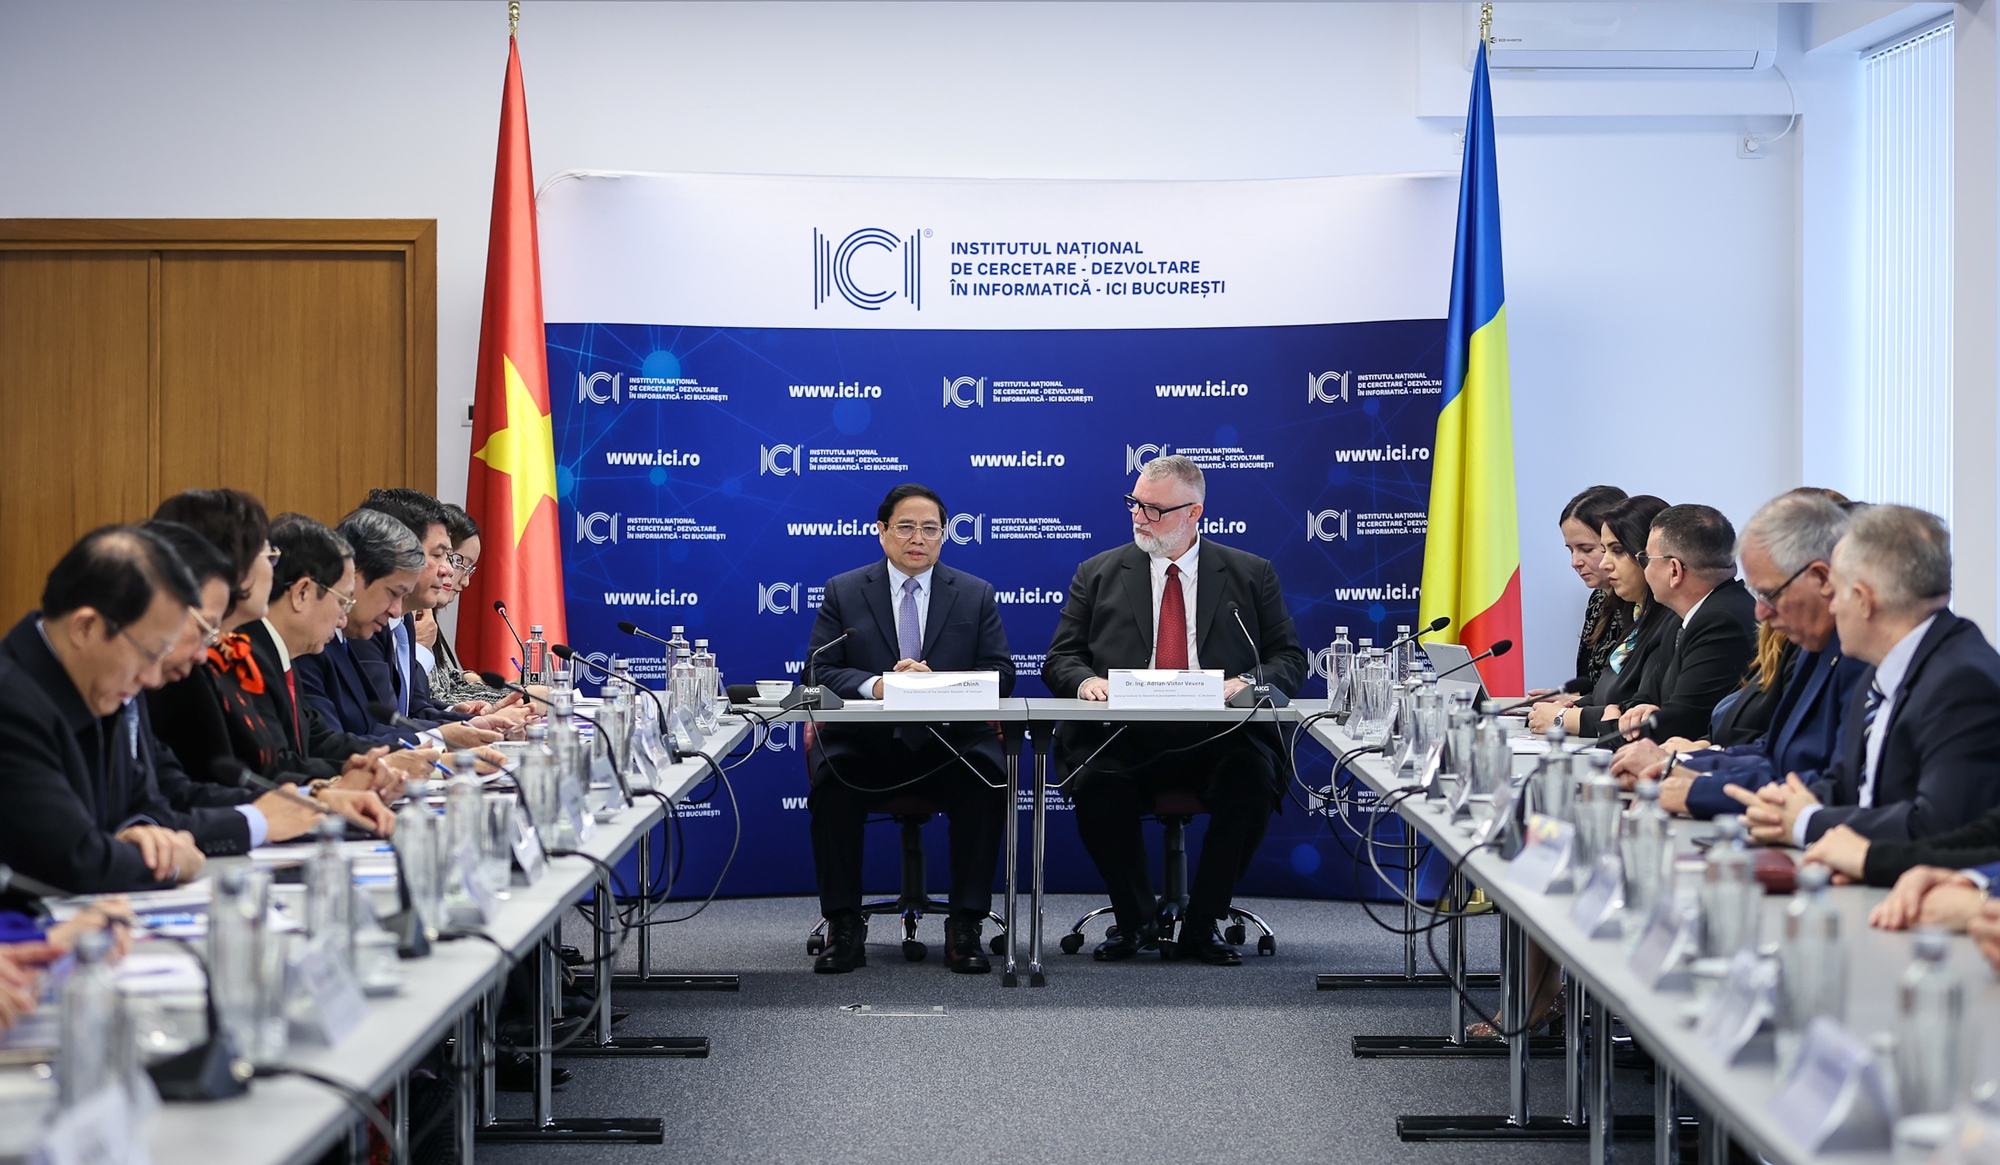 Thủ tướng đề nghị Viện ICI coi Việt Nam là một đối tác ưu tiên trong quá trình mở rộng hợp tác quốc tế - Ảnh: VGP/Nhật Bắc